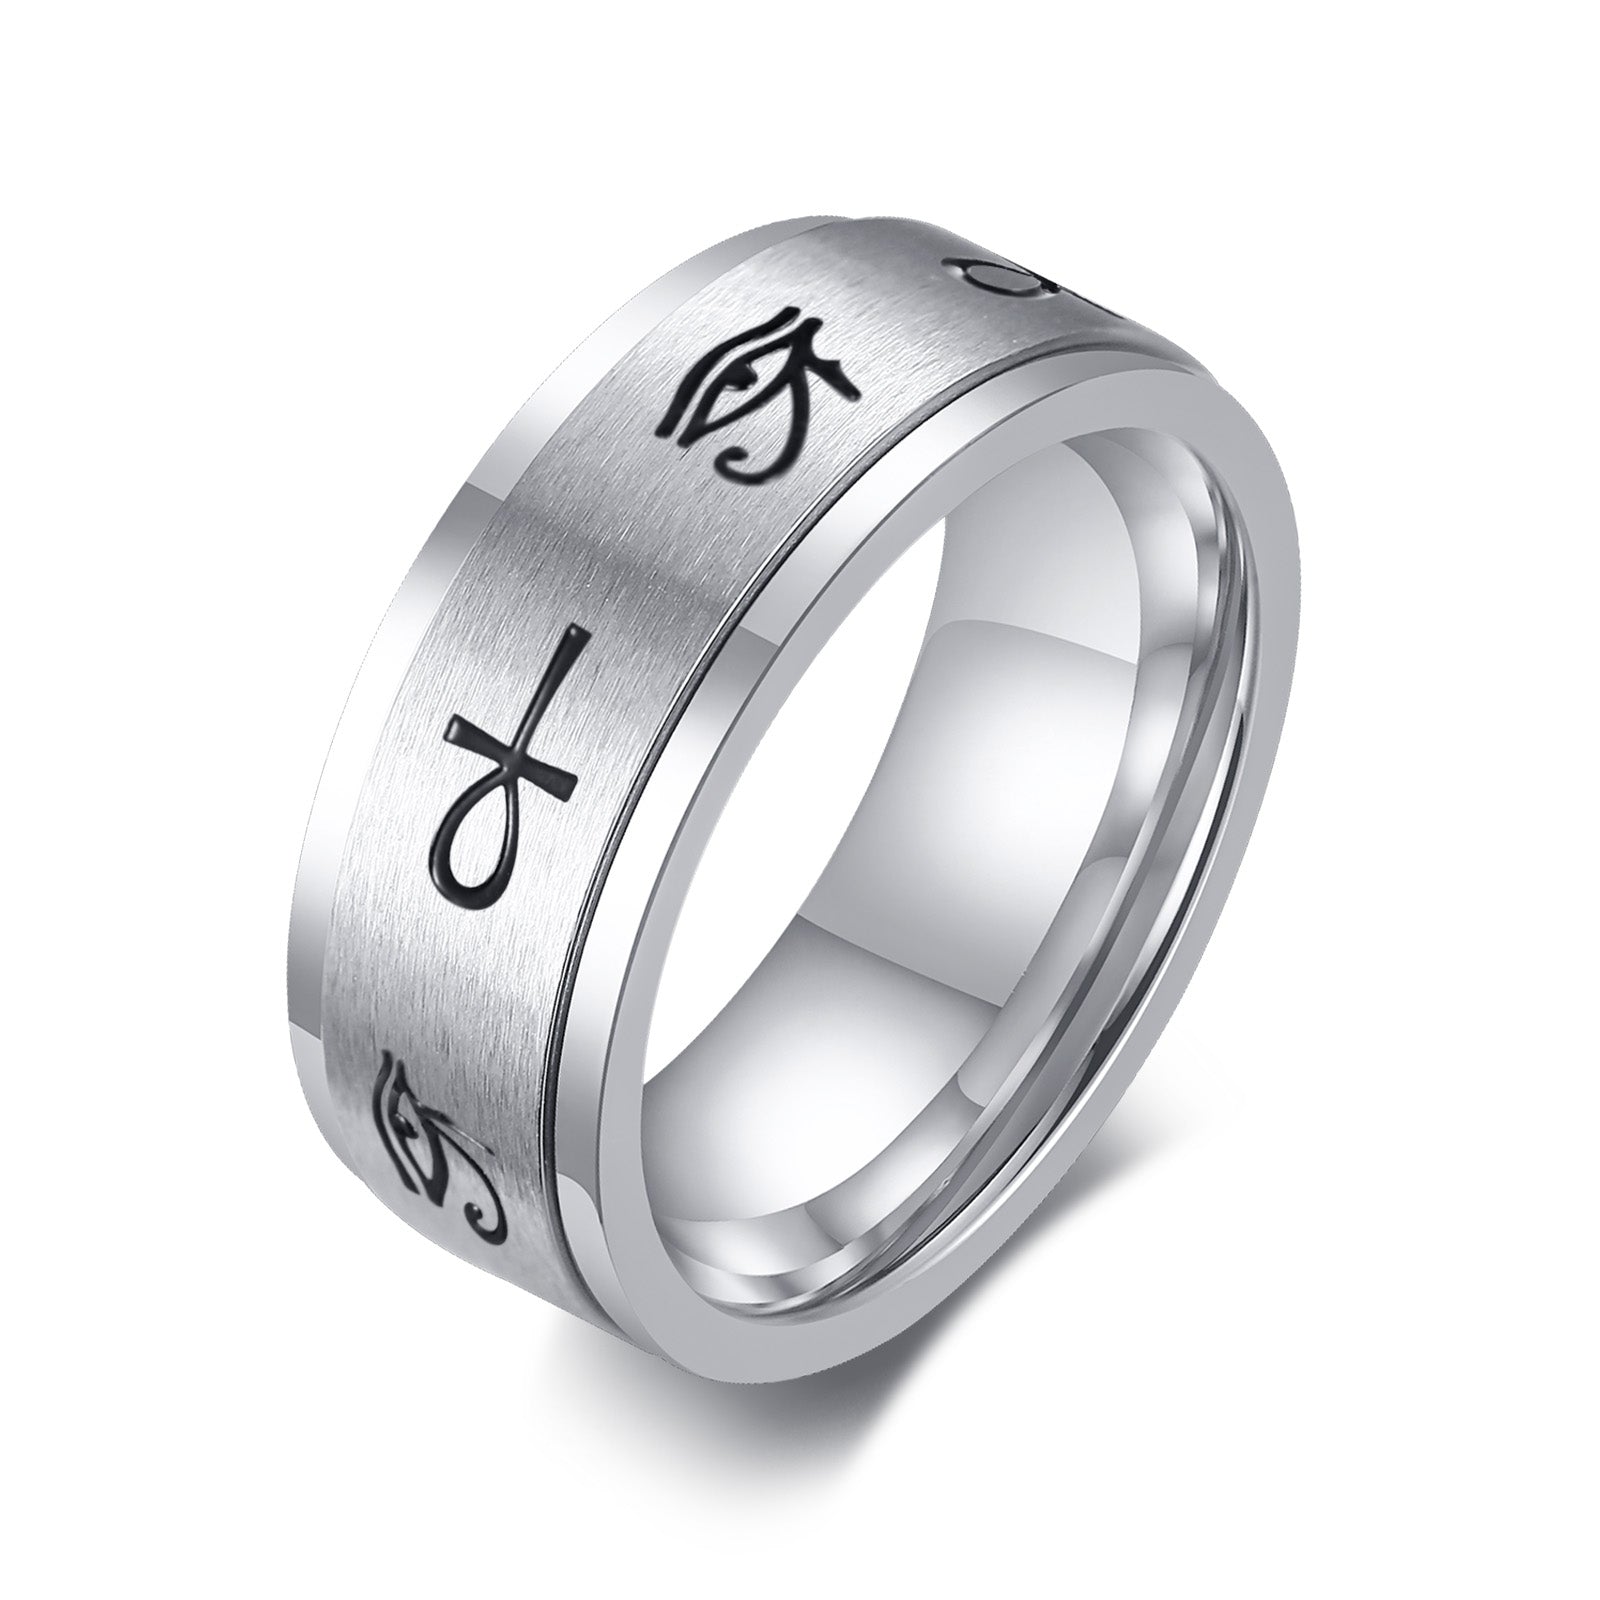 Kemite Eye of Heru Ankh Spinner Fidget Ring for Men - Stainless Steel